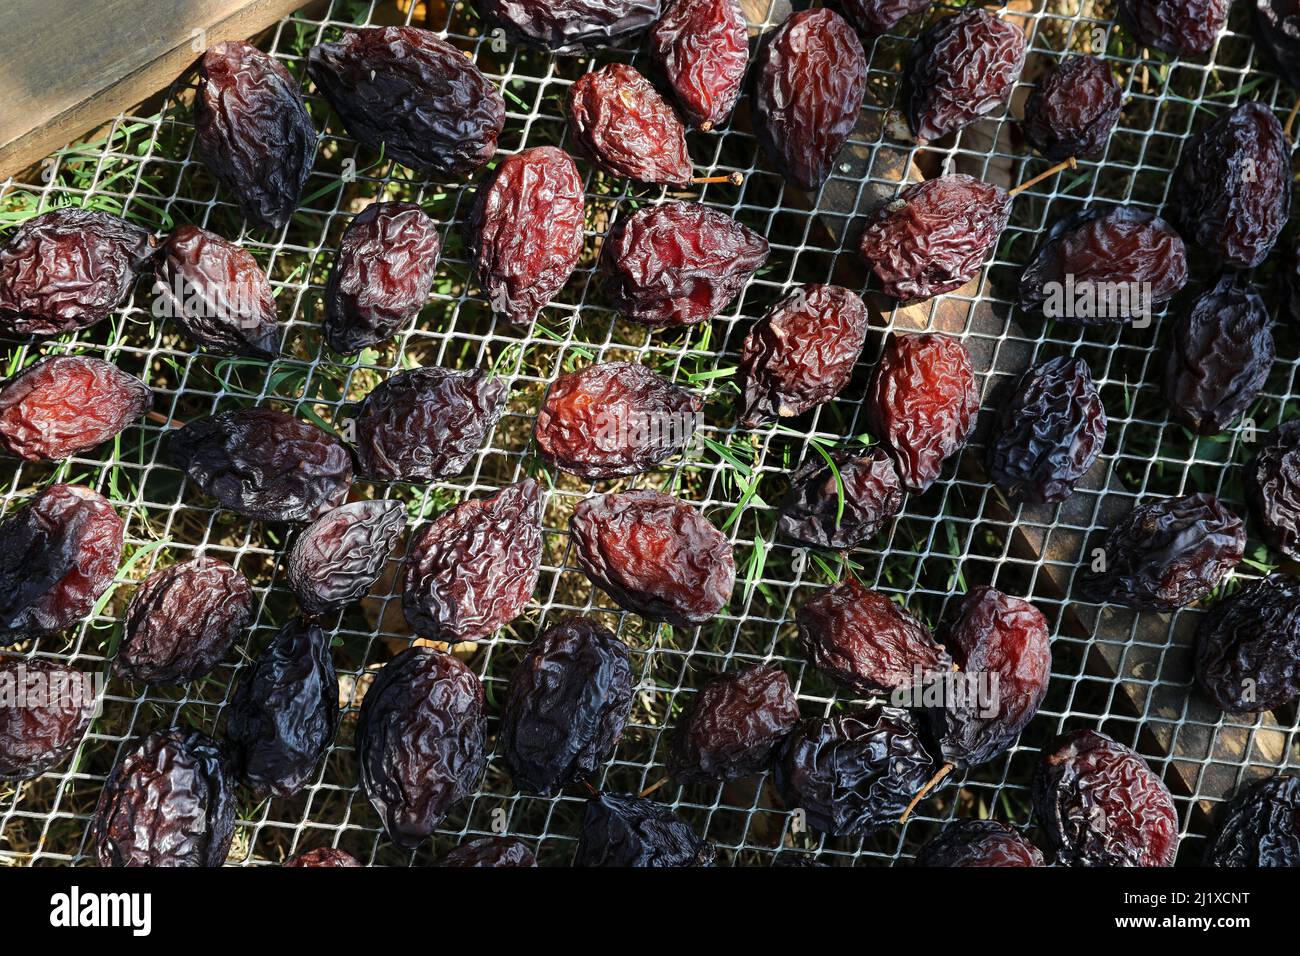 Culture des pruneaux d'Agen : séchage de prune d'Ente dans des caisses après la récolte. Les fruits sont répartis sur des plateaux à sécher Banque D'Images